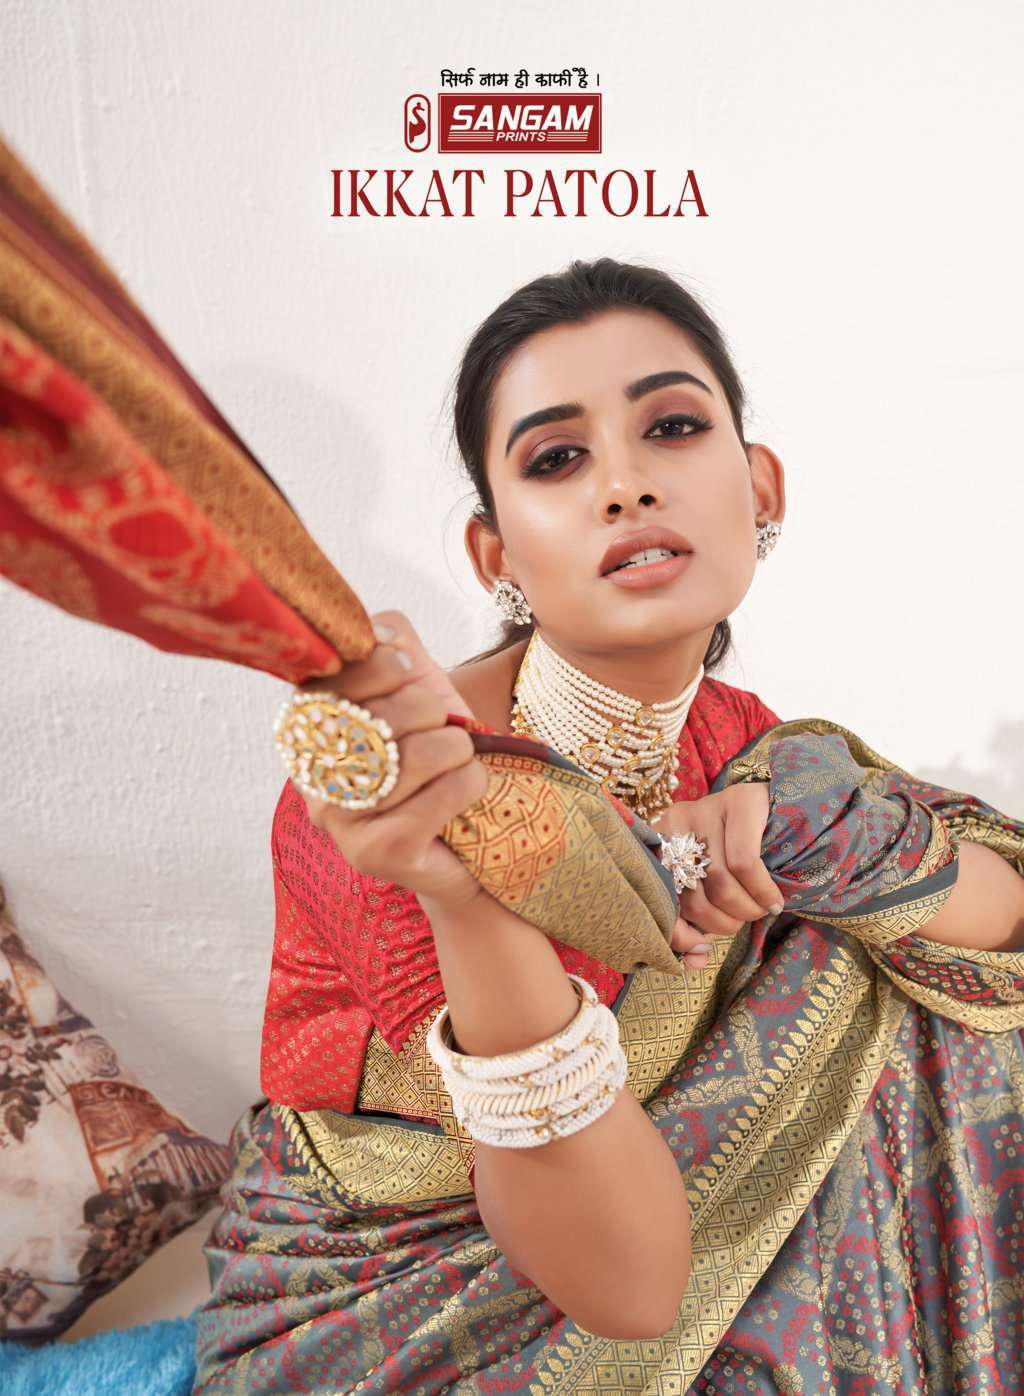 Sangam Print Ikkat Silk With Traditional Patola Design SAree...